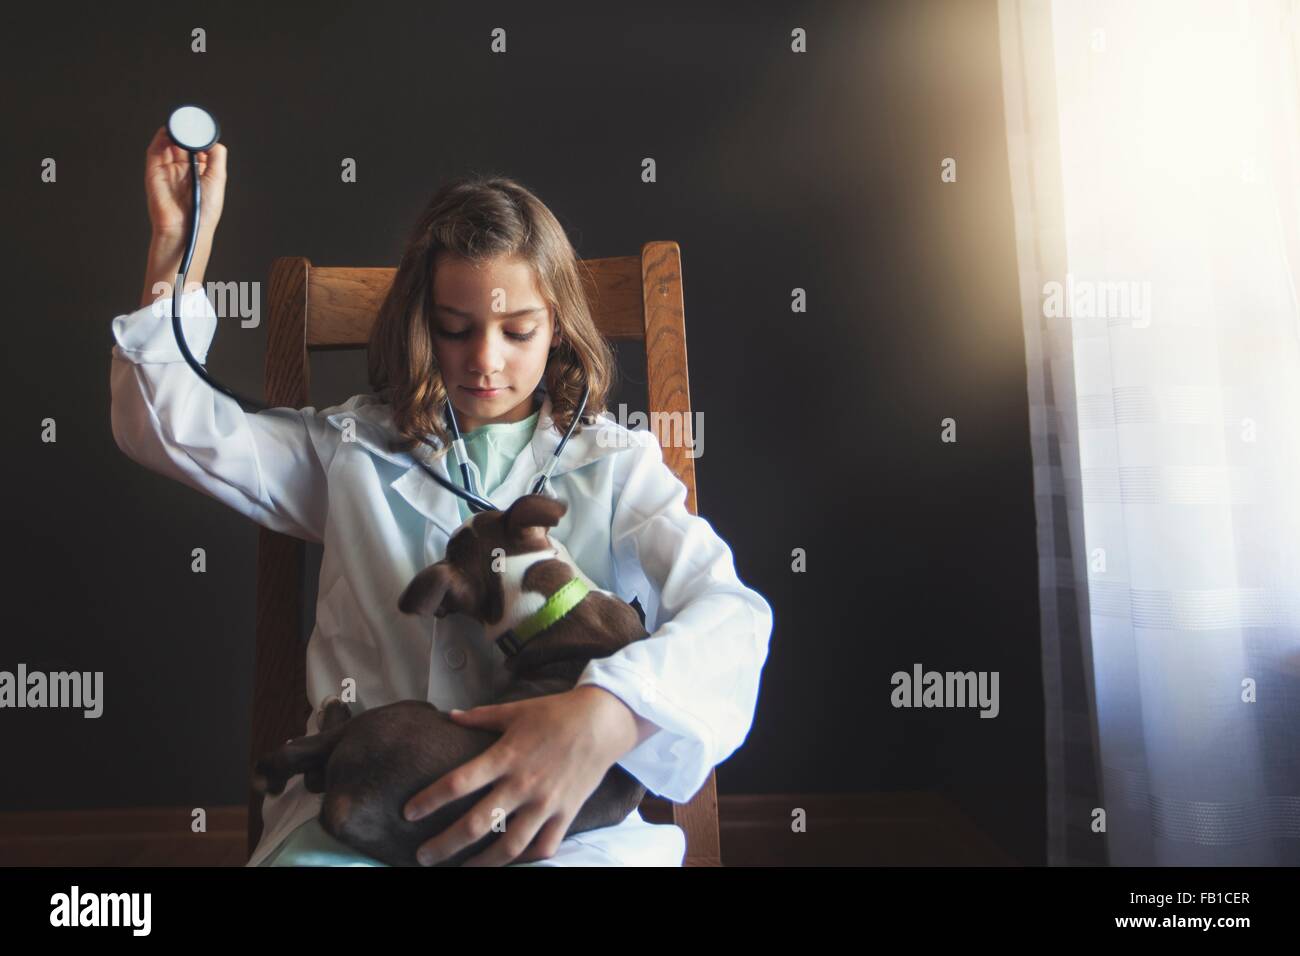 Mädchen auf Stuhl sitzend verkleidete sich als Arzt tendenziell Boston Terrier Welpe mit Stethoskop Stockfoto